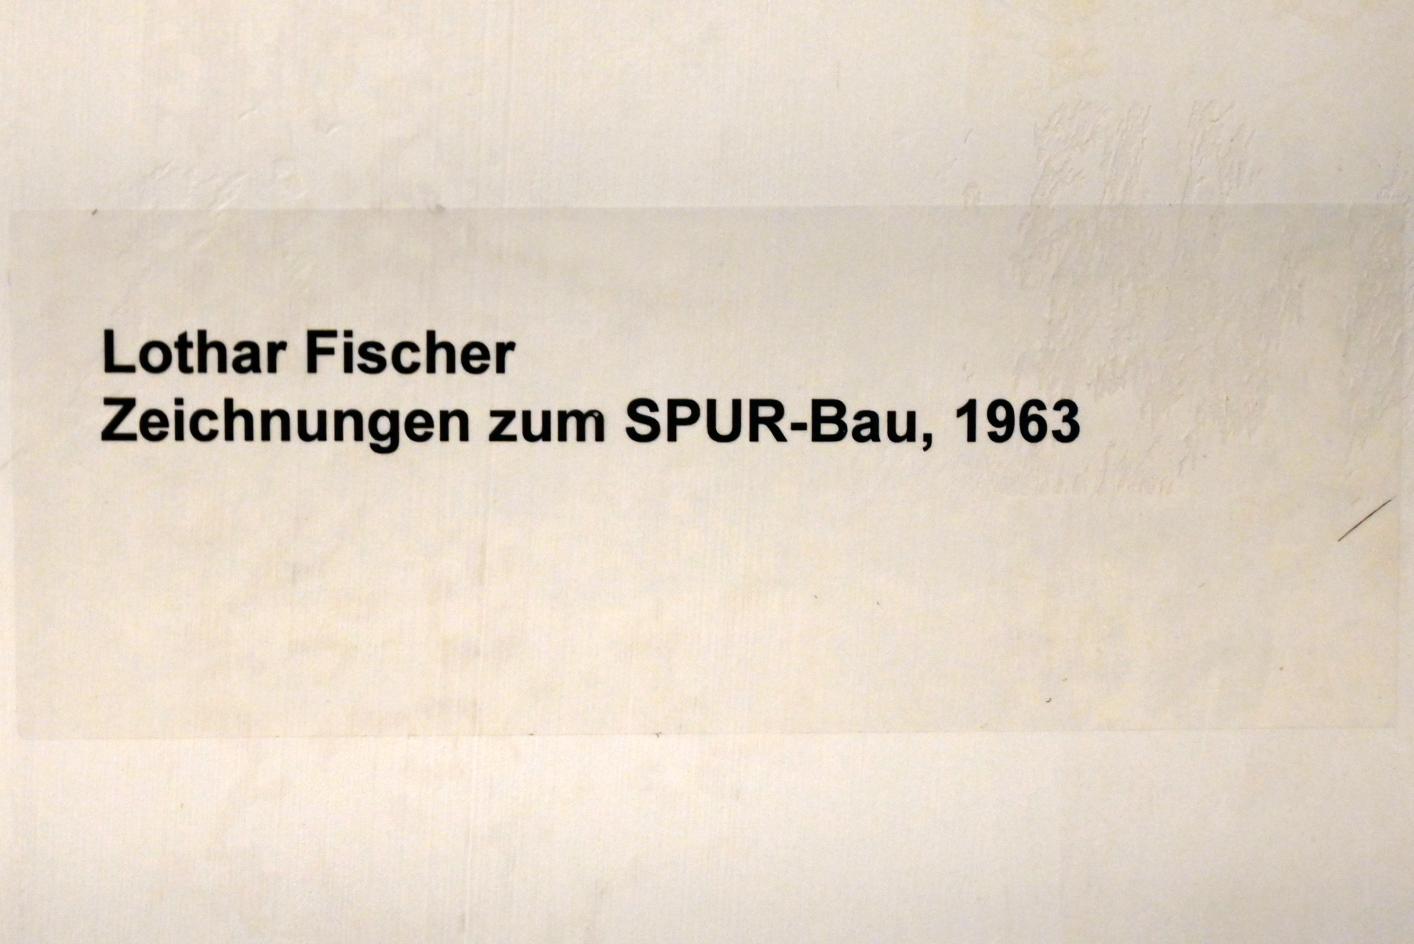 Lothar Fischer (1959–2004), Zeichnungen zum SPUR-Bau, Neumarkt in der Oberpfalz, Museum Lothar Fischer, Obergeschoß Raum 3, 1963, Bild 2/2